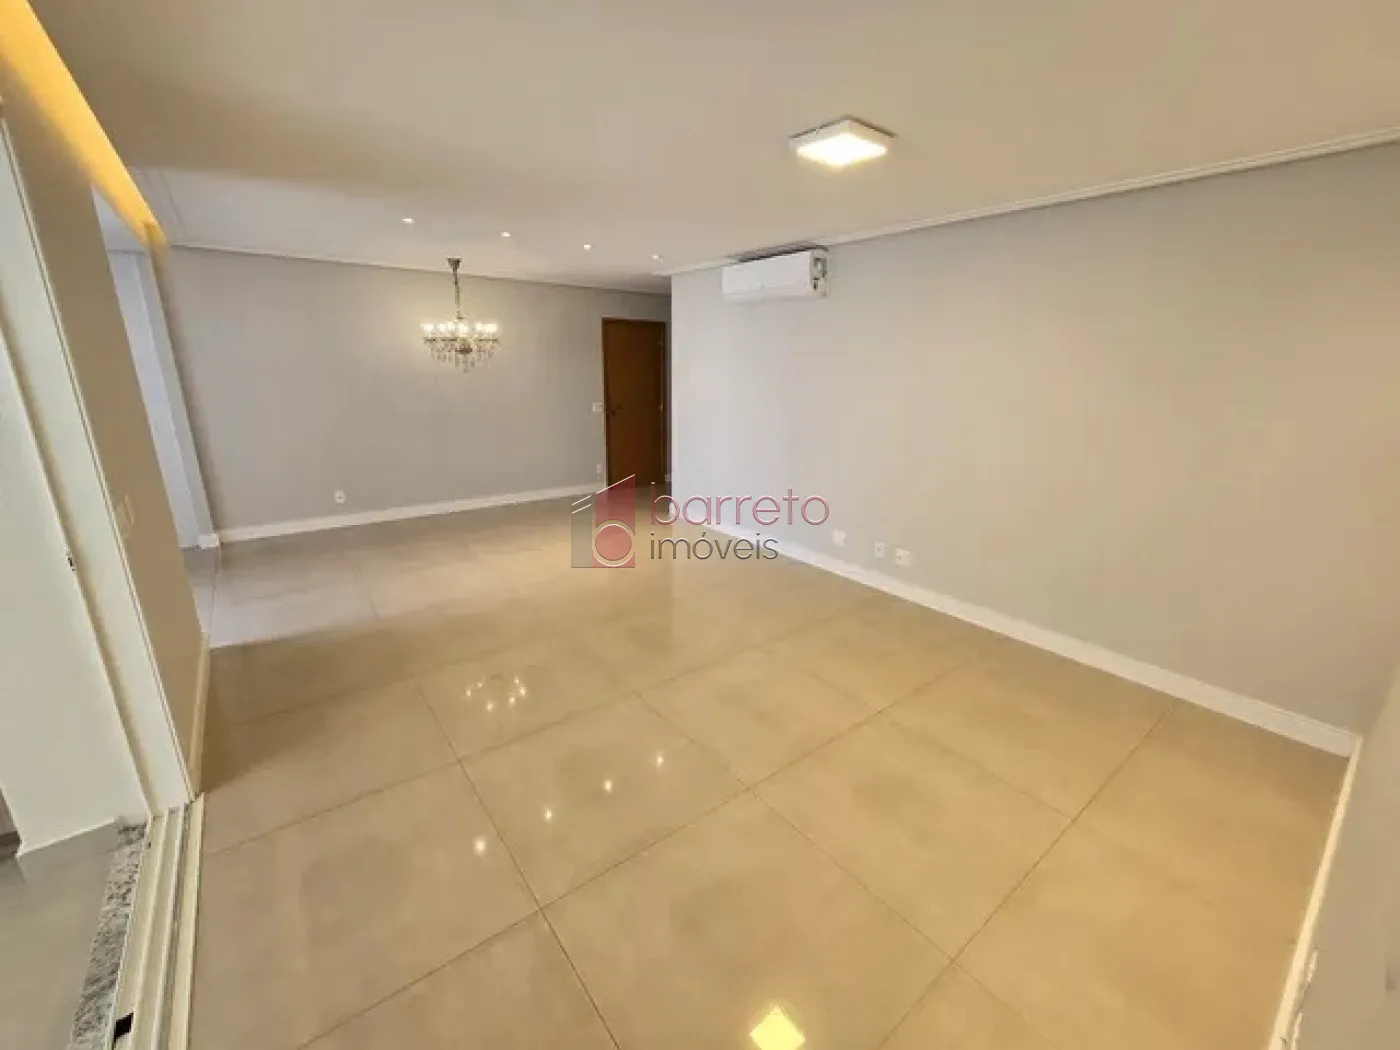 Comprar Apartamento / Padrão em Jundiaí R$ 1.280.000,00 - Foto 3